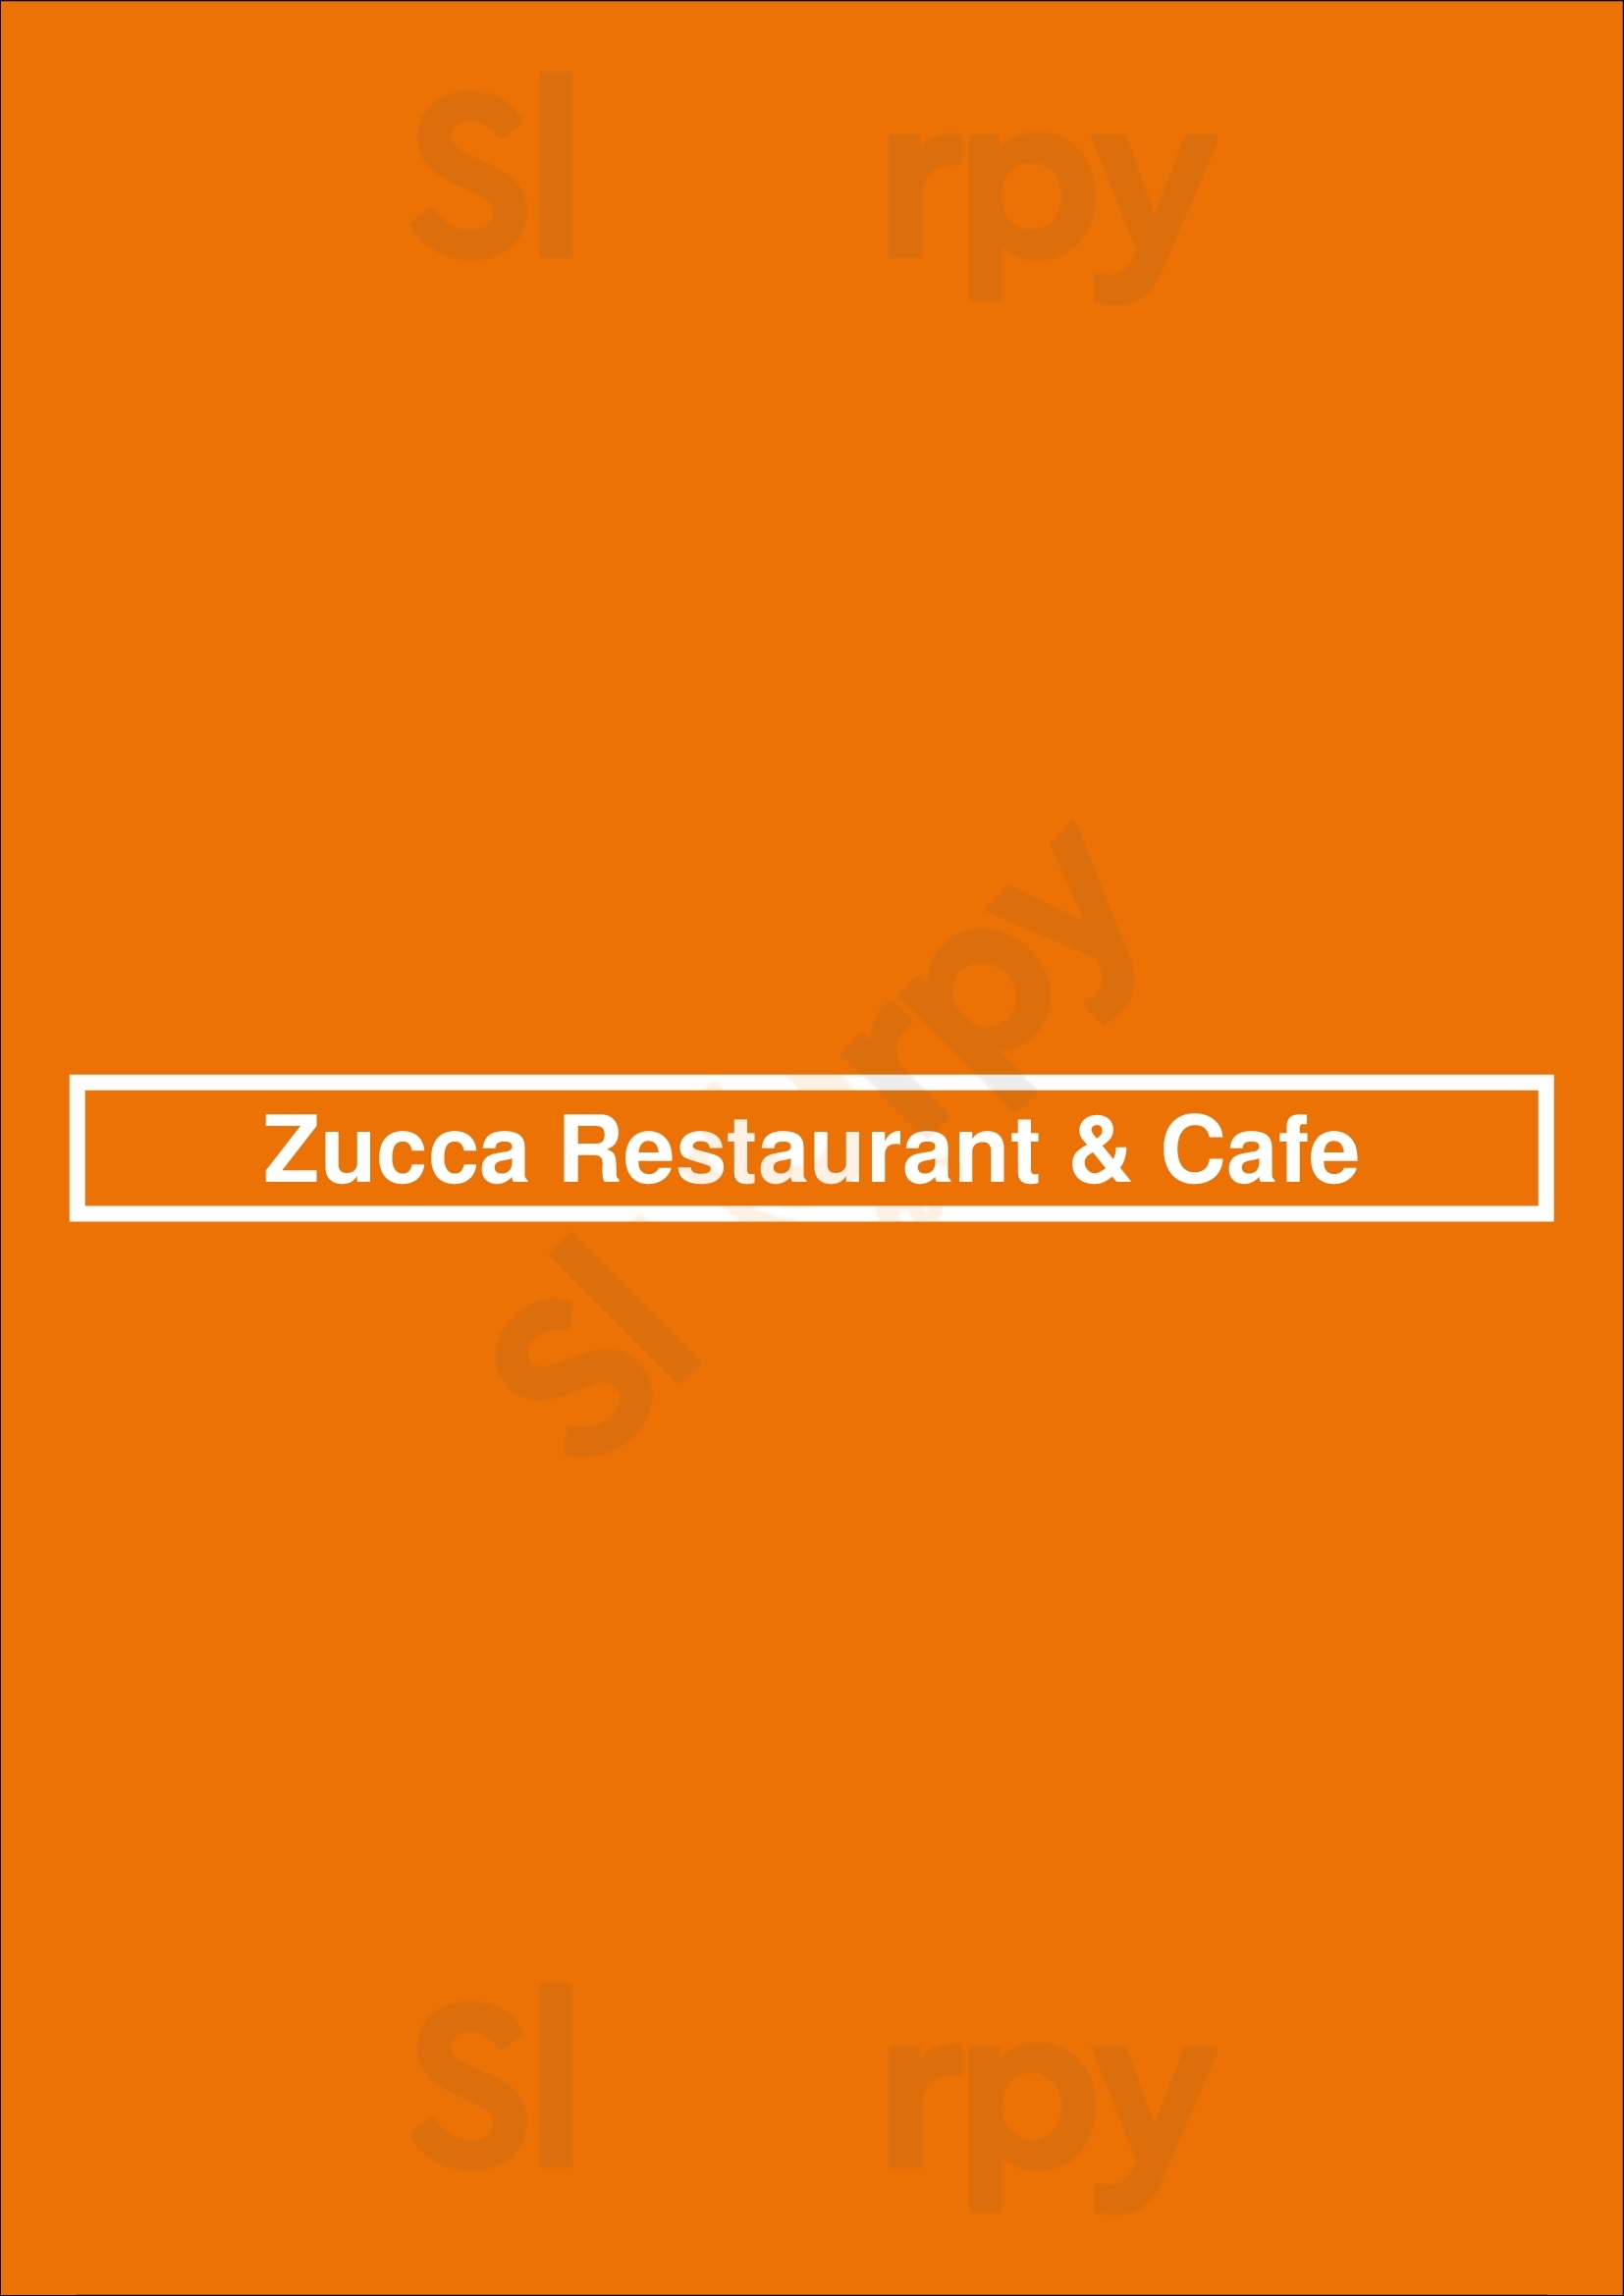 Zucca Restaurant Edinburgh Menu - 1